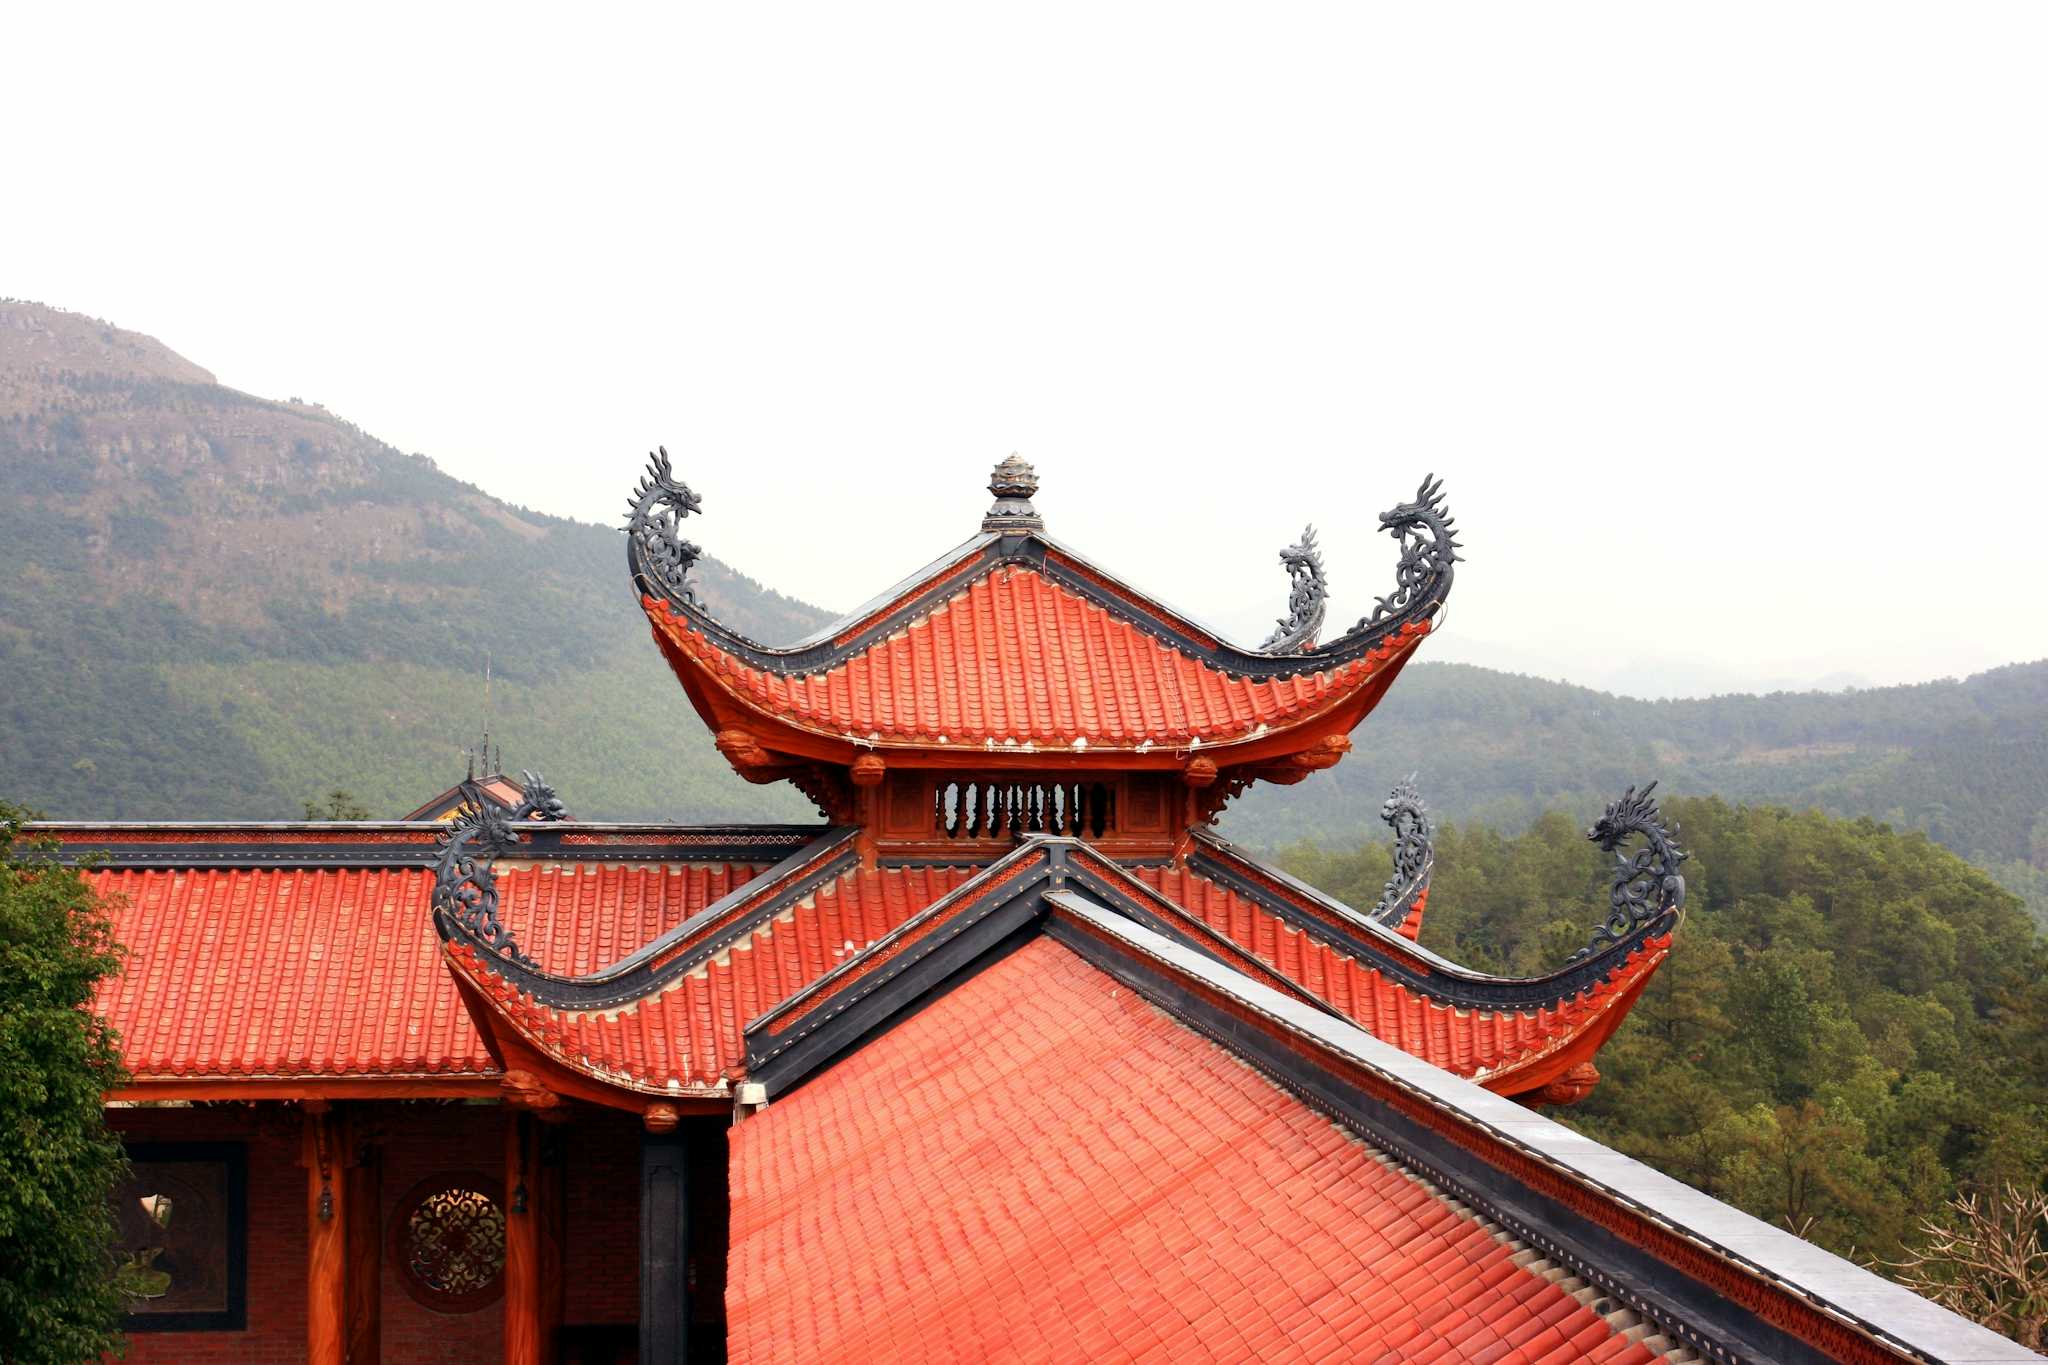 Ba Vang Pagoda